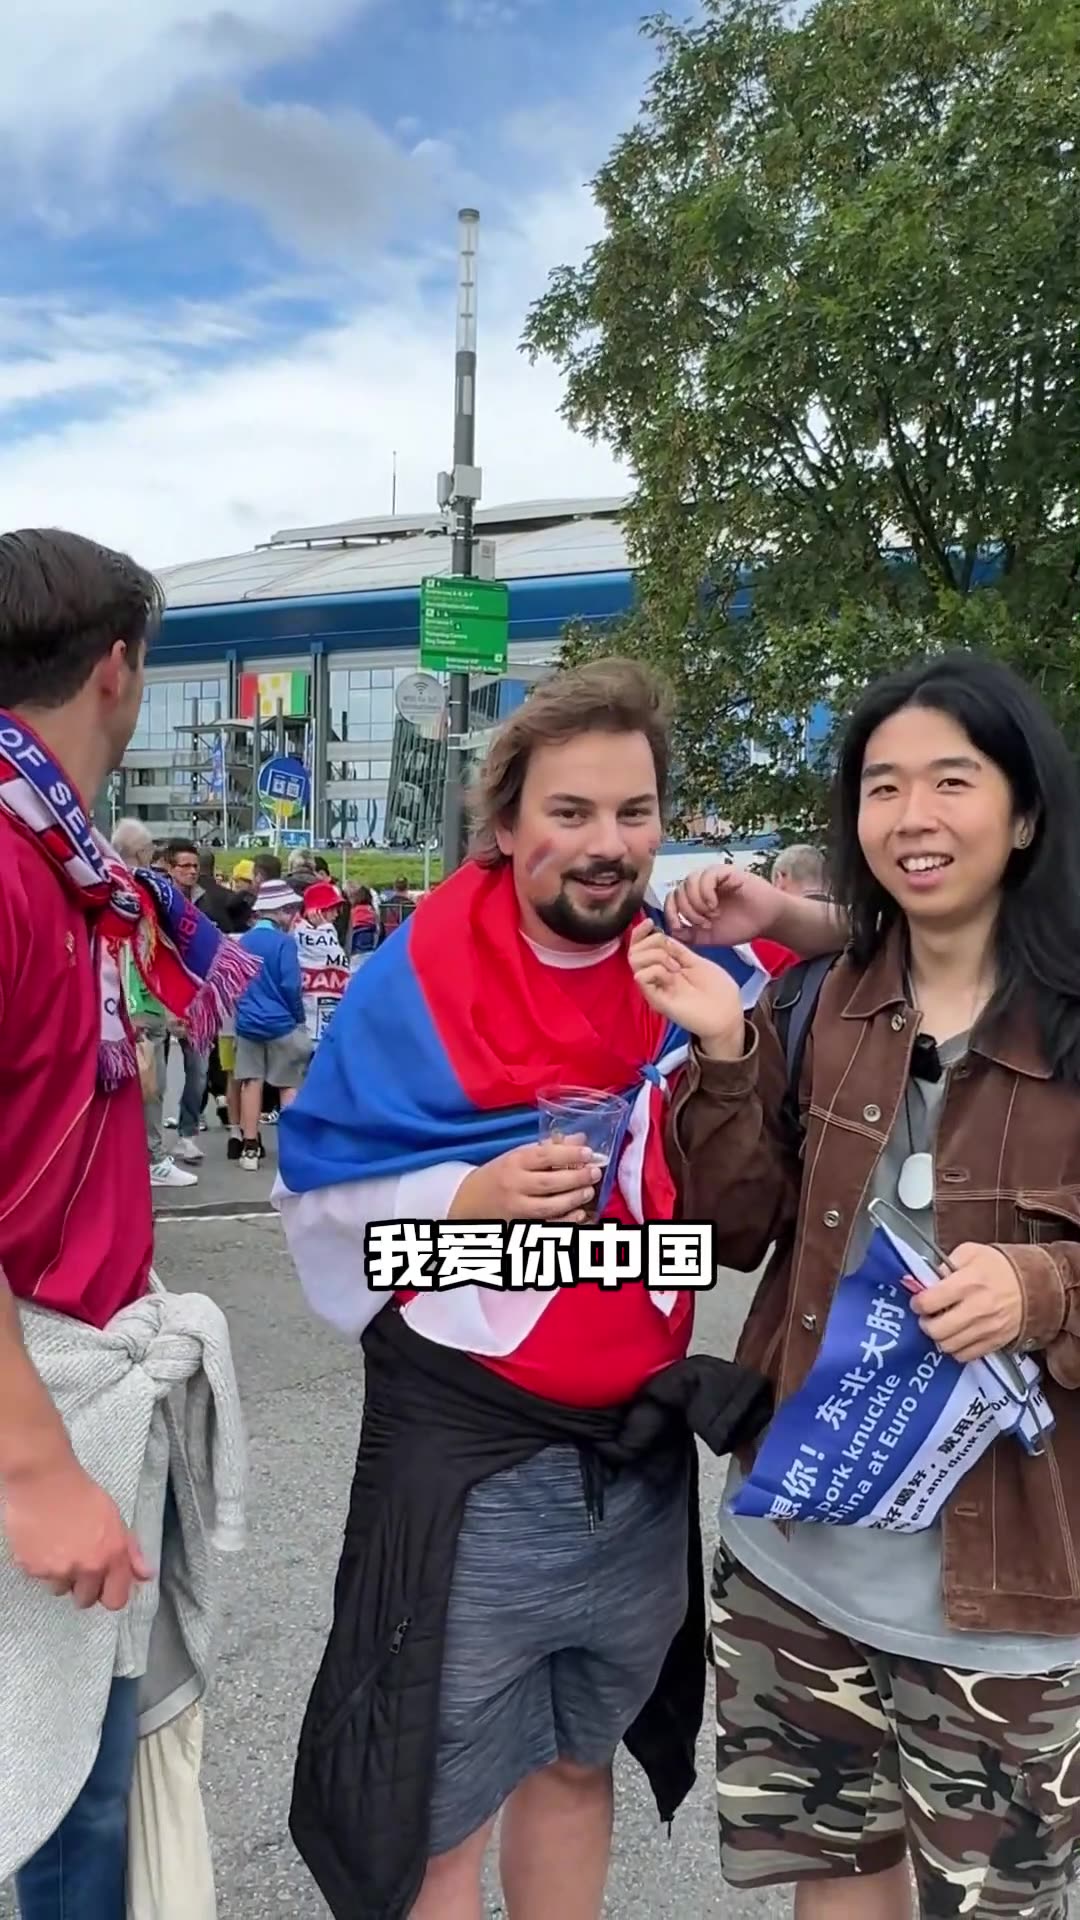 塞尔维亚球迷在欧洲杯赛场外唱《我爱你中国》